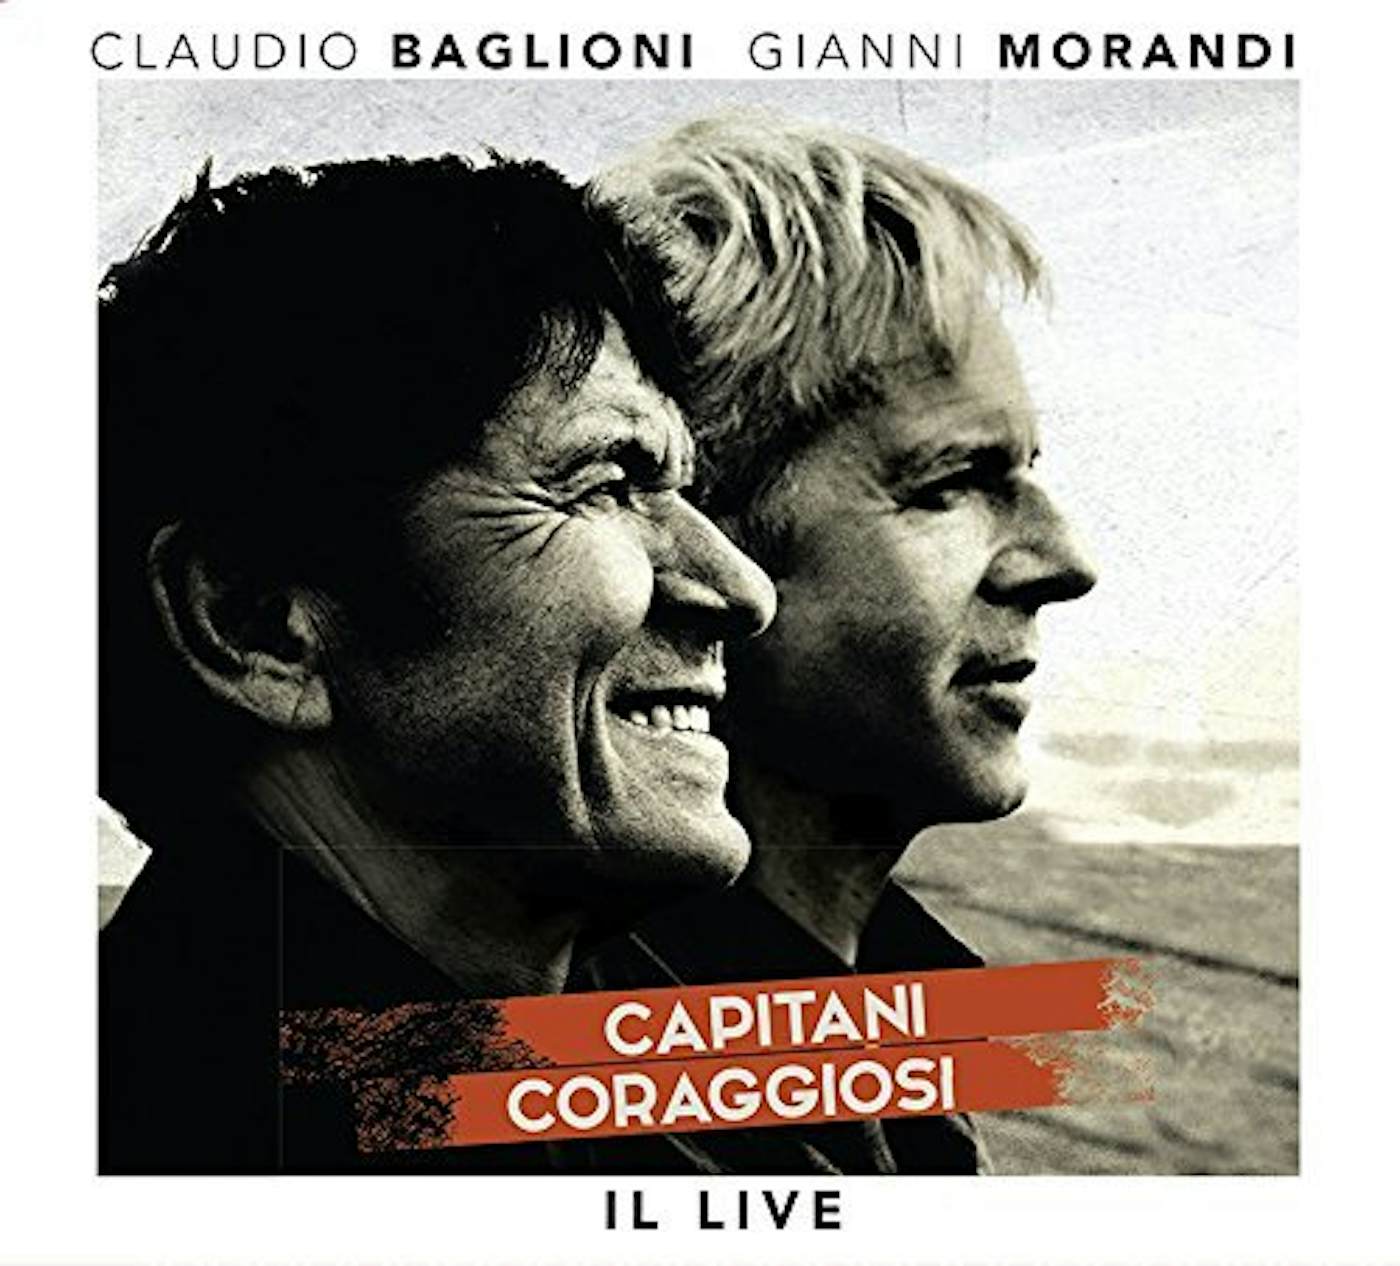 Claudio Baglioni & Gianni Morandi CAPITANI CORAGGIOSI: IL LIVE (3CD+DVD) CD